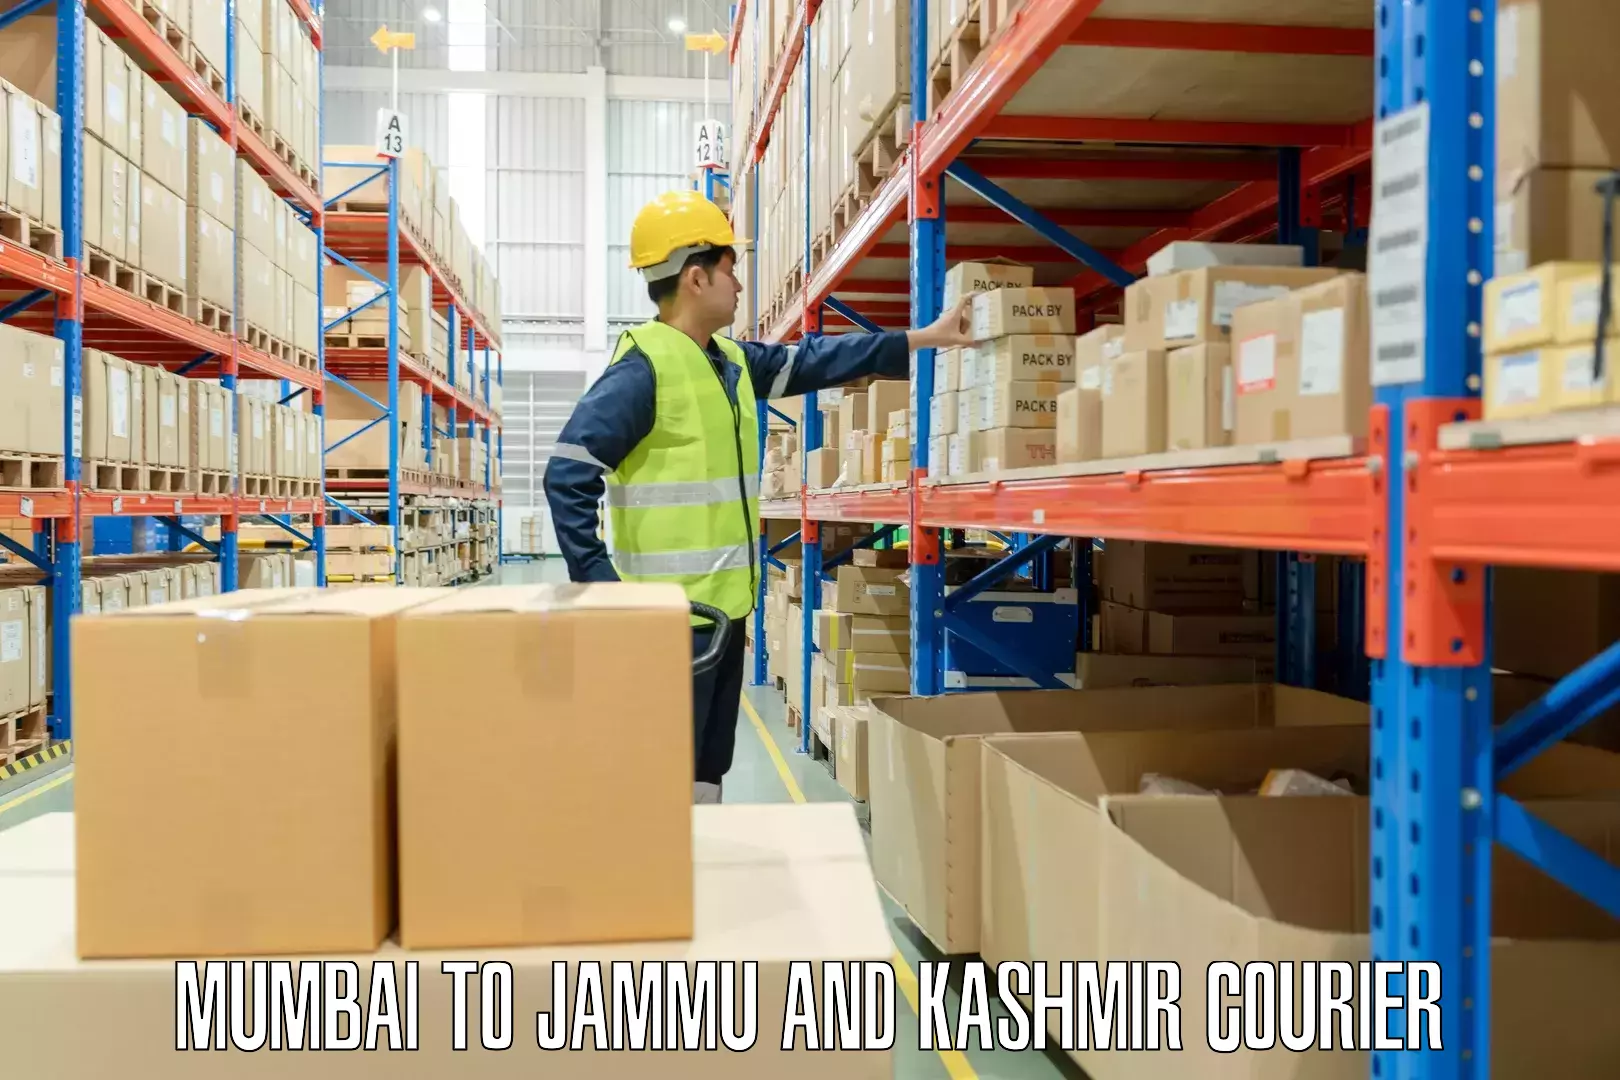 Luggage transfer service Mumbai to Jammu and Kashmir